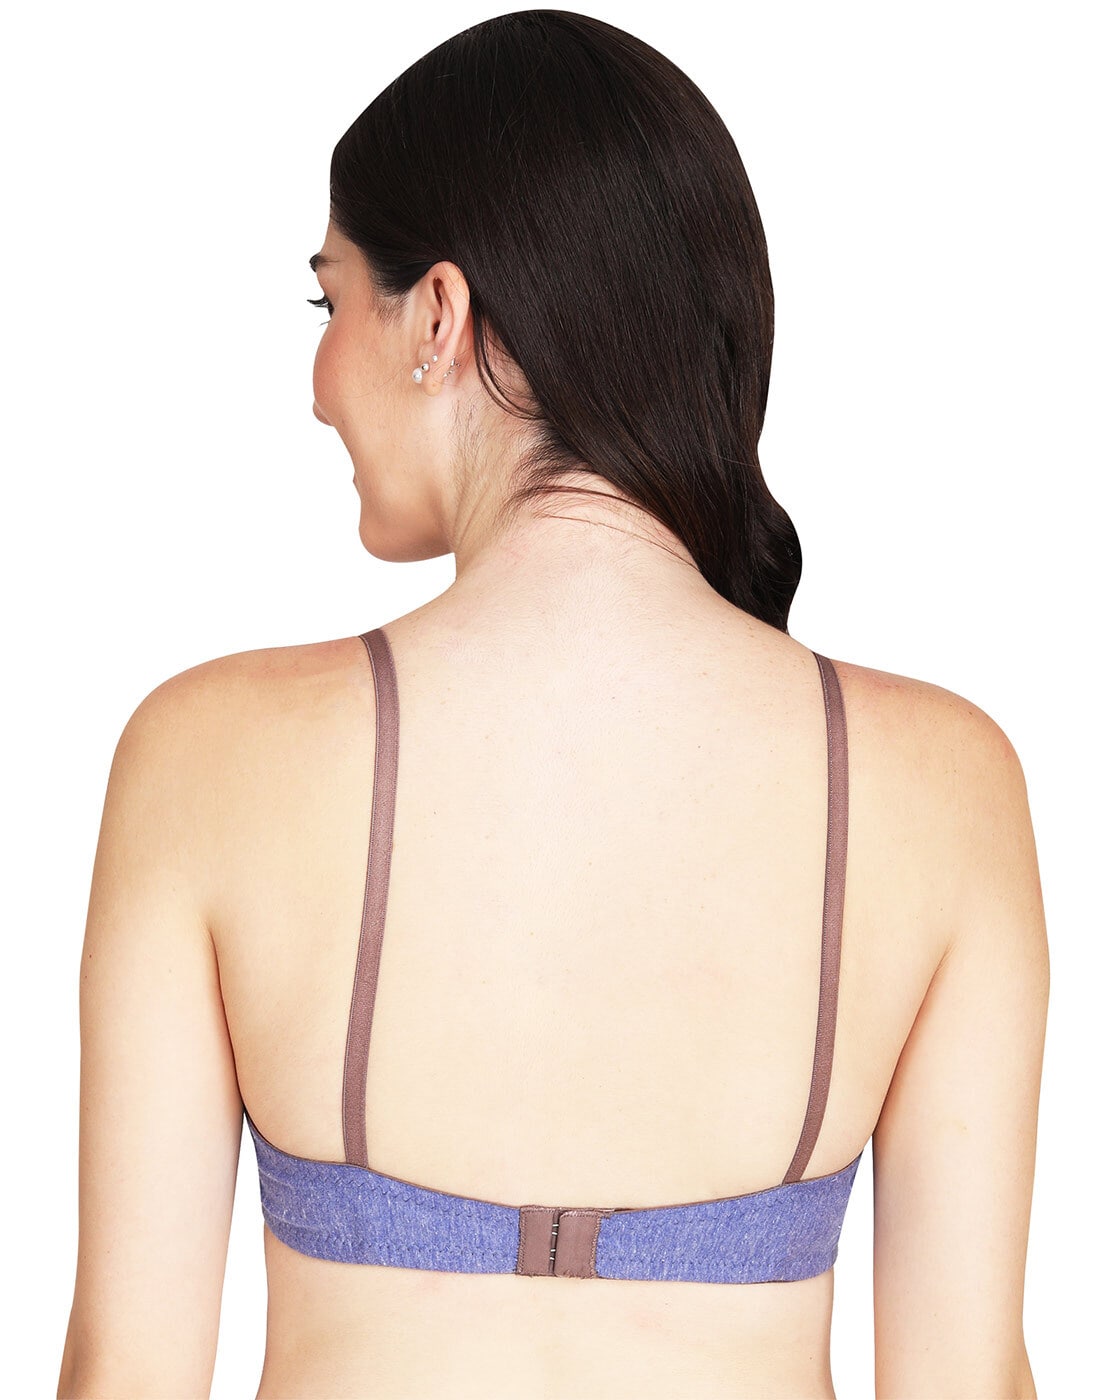 Buy Blue Bras for Women by Liigne Online